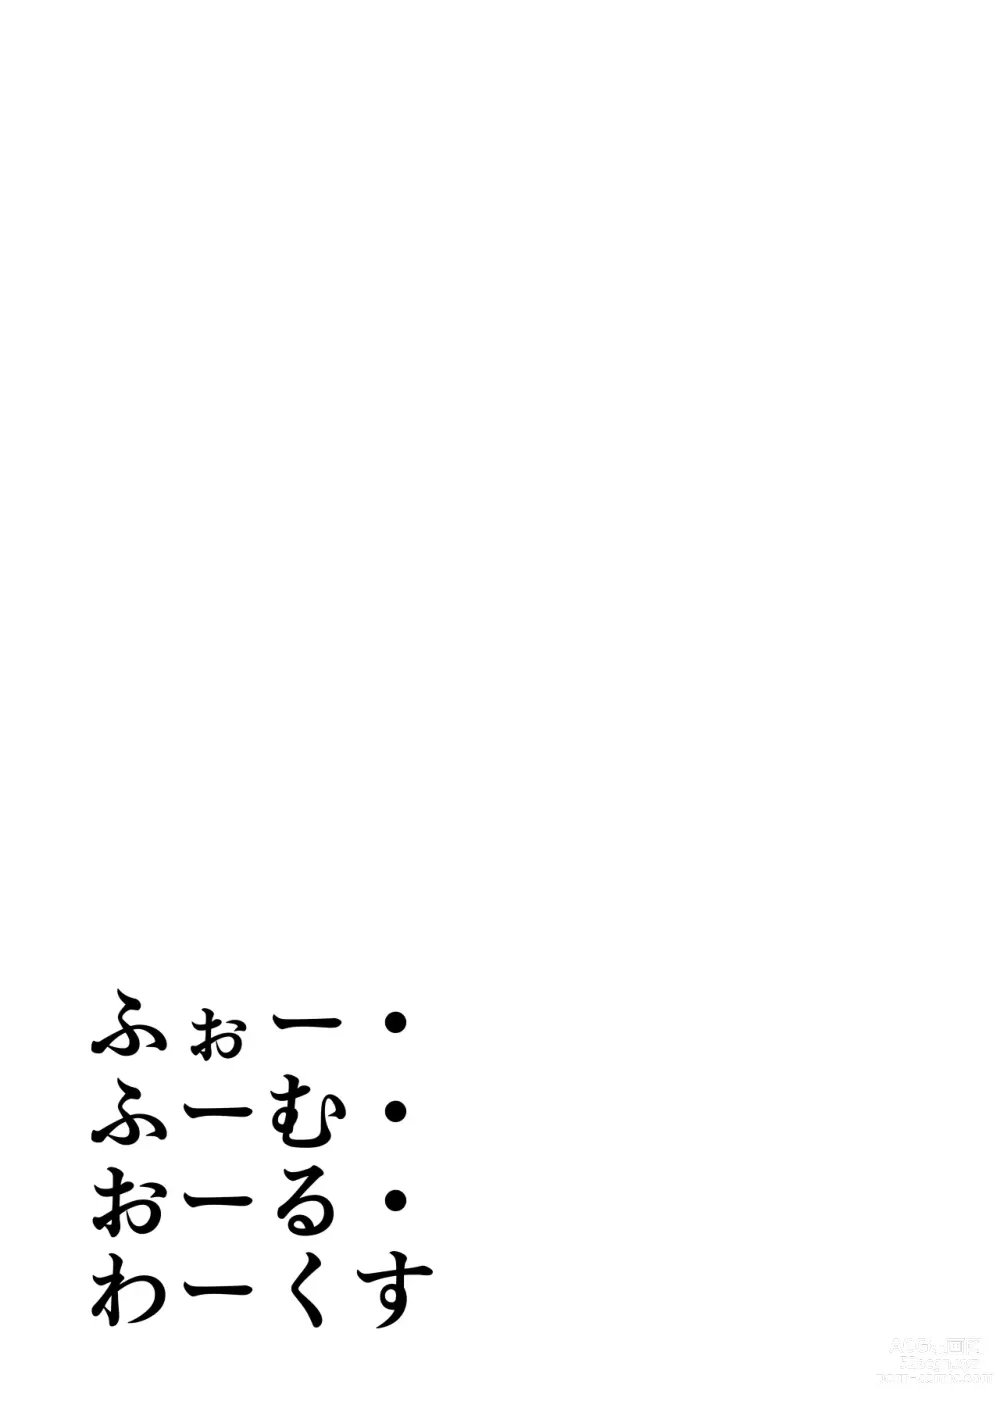 Page 221 of doujinshi Whoo-hoo-hoo-roo-lu-wax.